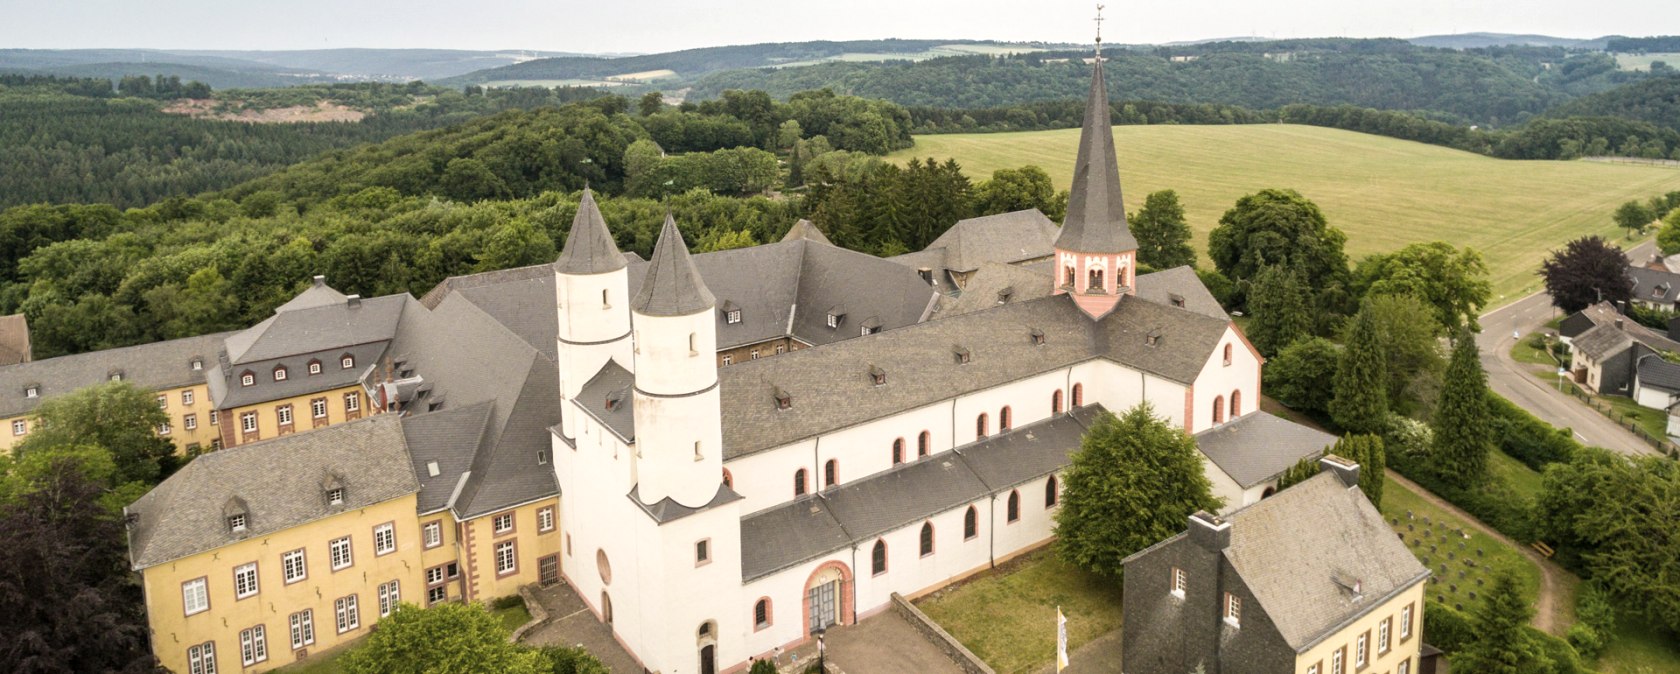 Kloster Steinfeld am Eifelsteig, © Eifel Tourismus GmbH / D. Ketz